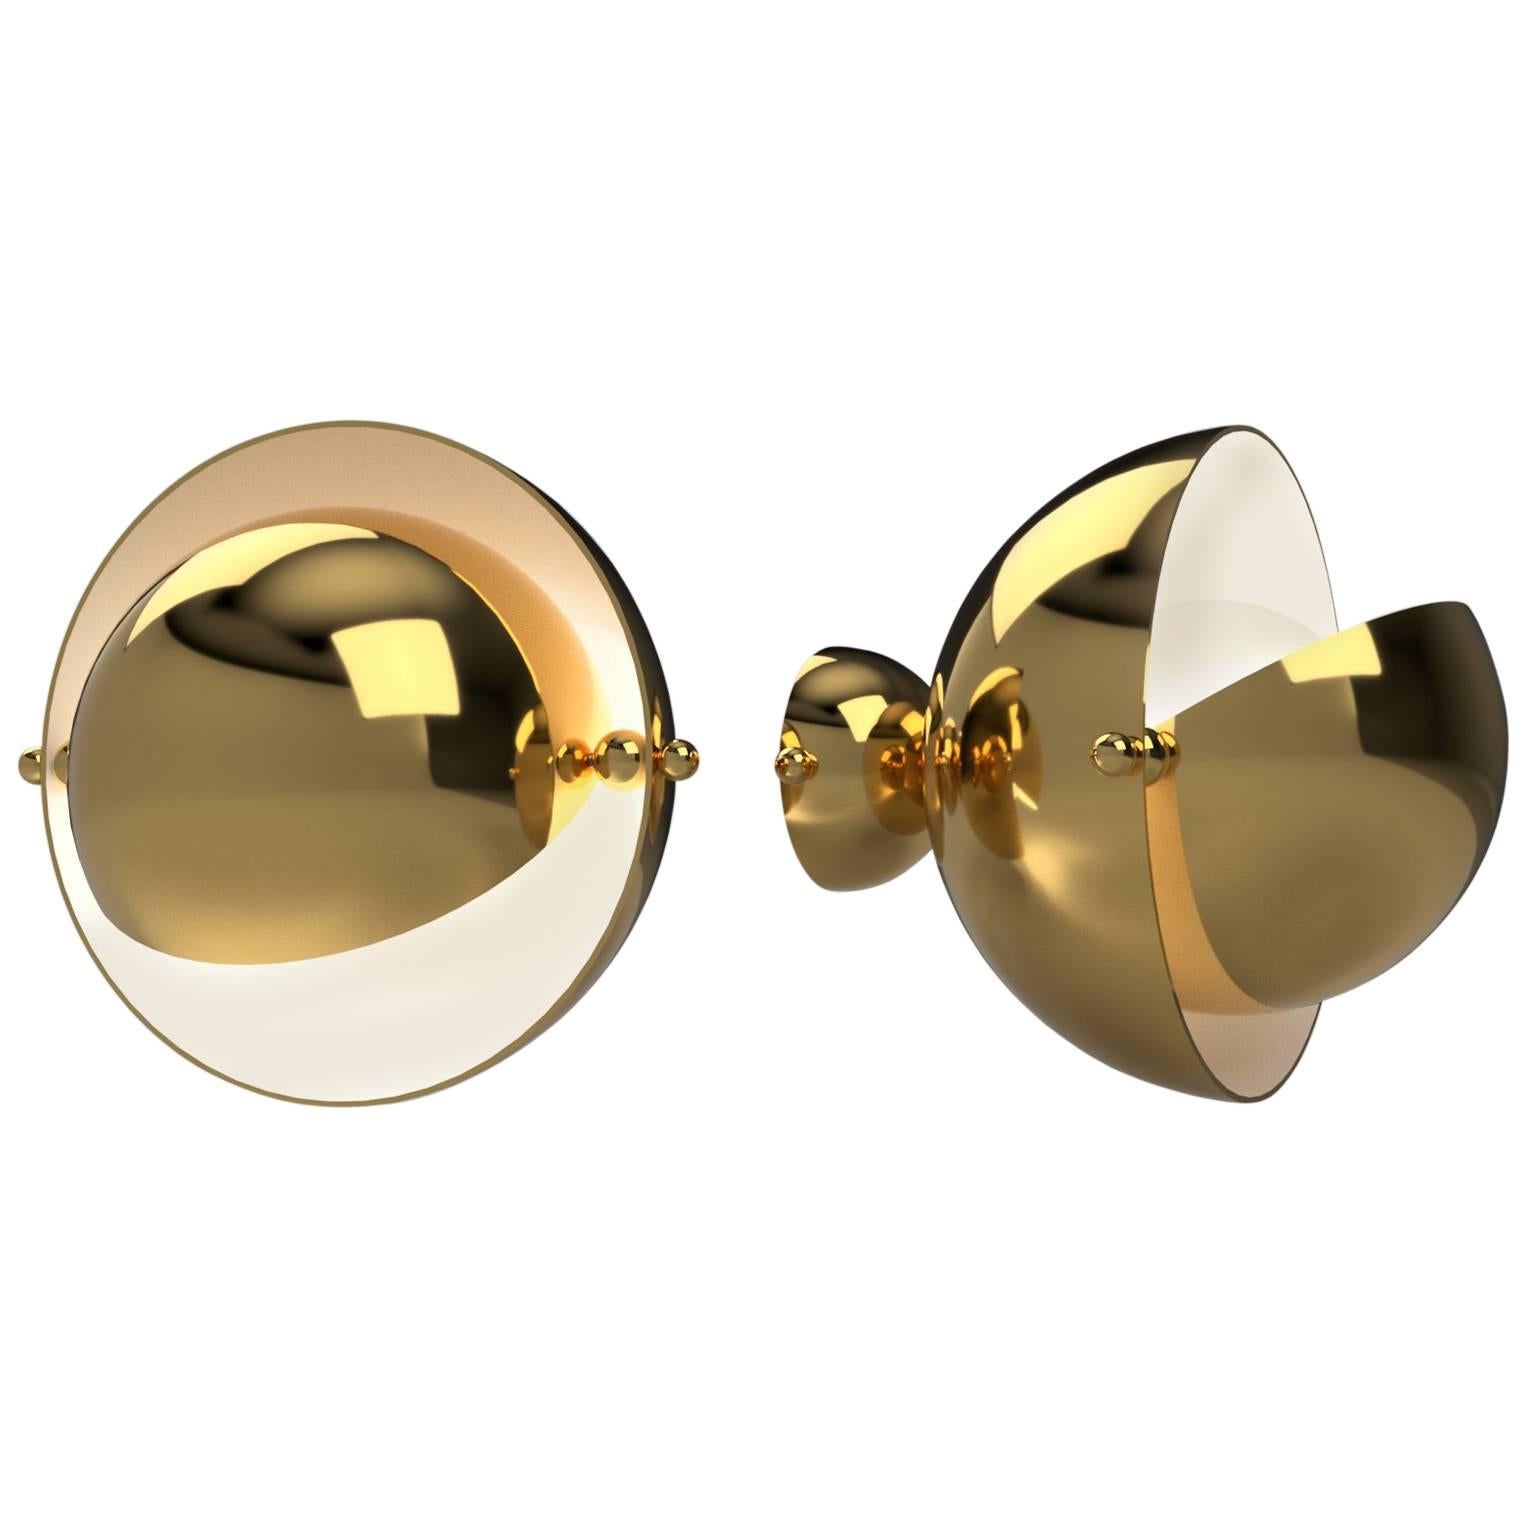 Pair of Spherical Brass Sconces, VINGTIEME Edition, Paris For Sale